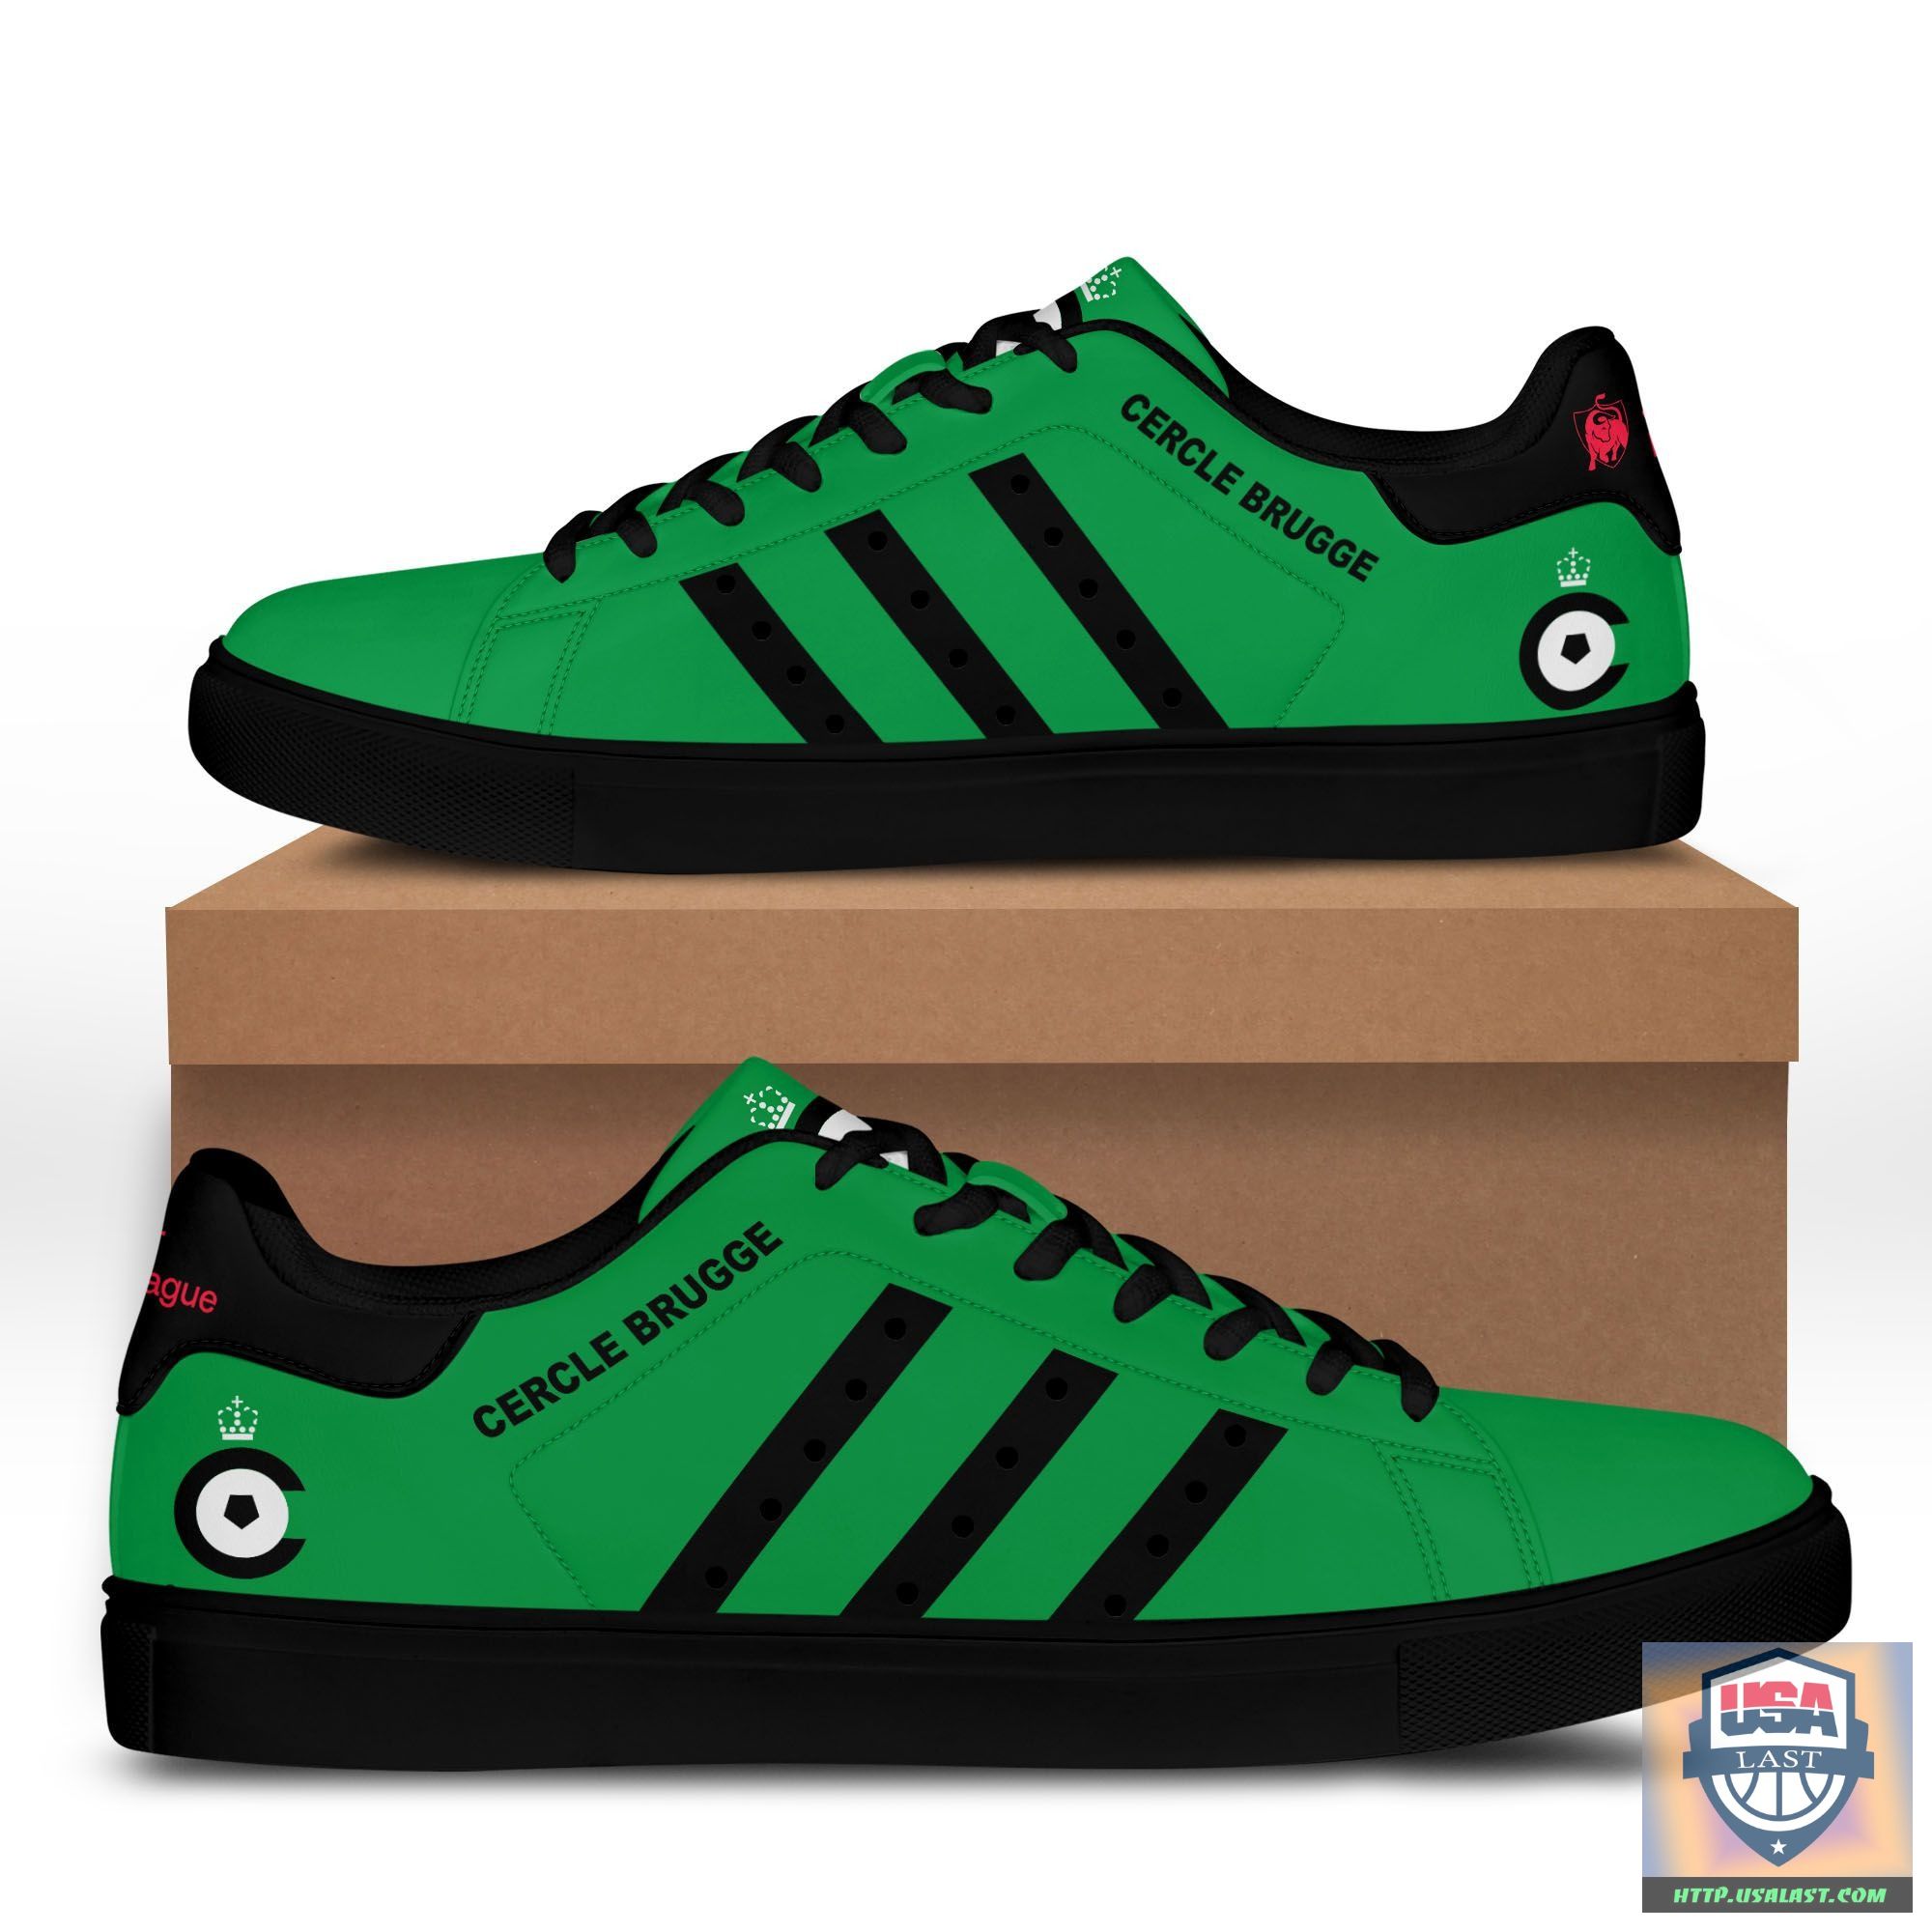 Cercle Brugge K.S.V Skate Low Top Shoes Green Version – Usalast